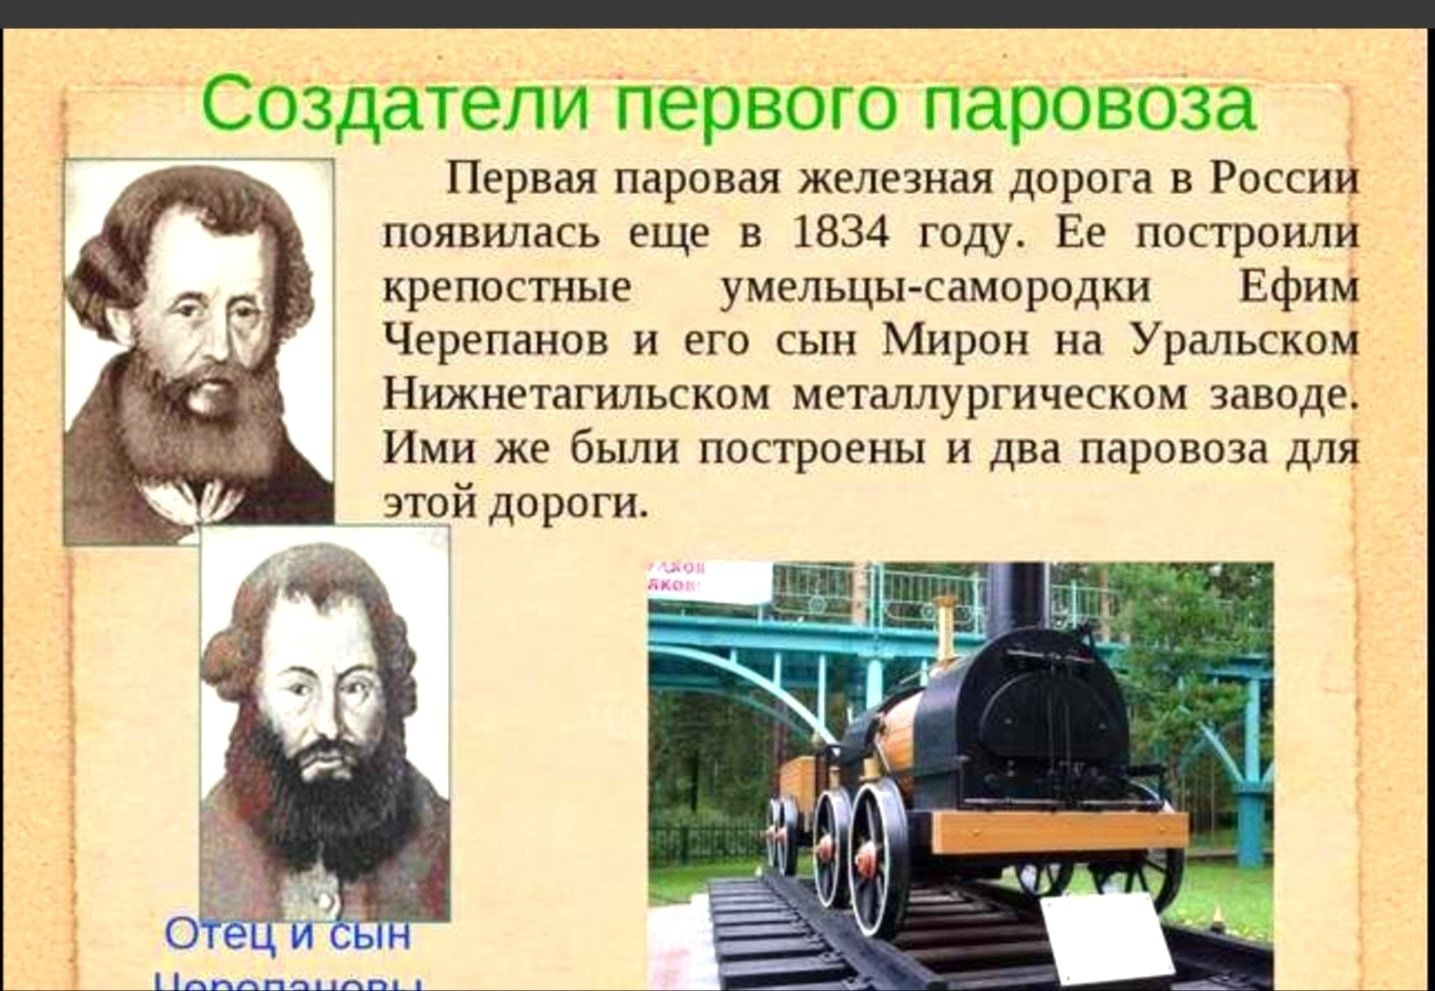 Рассказы про паровозы. Первый паровоз в мире и его изобретатель. Первый изобретатель паровоза в России. Черепановы создатели первого российского паровоза. Изобретатели паровоза Черепановы.